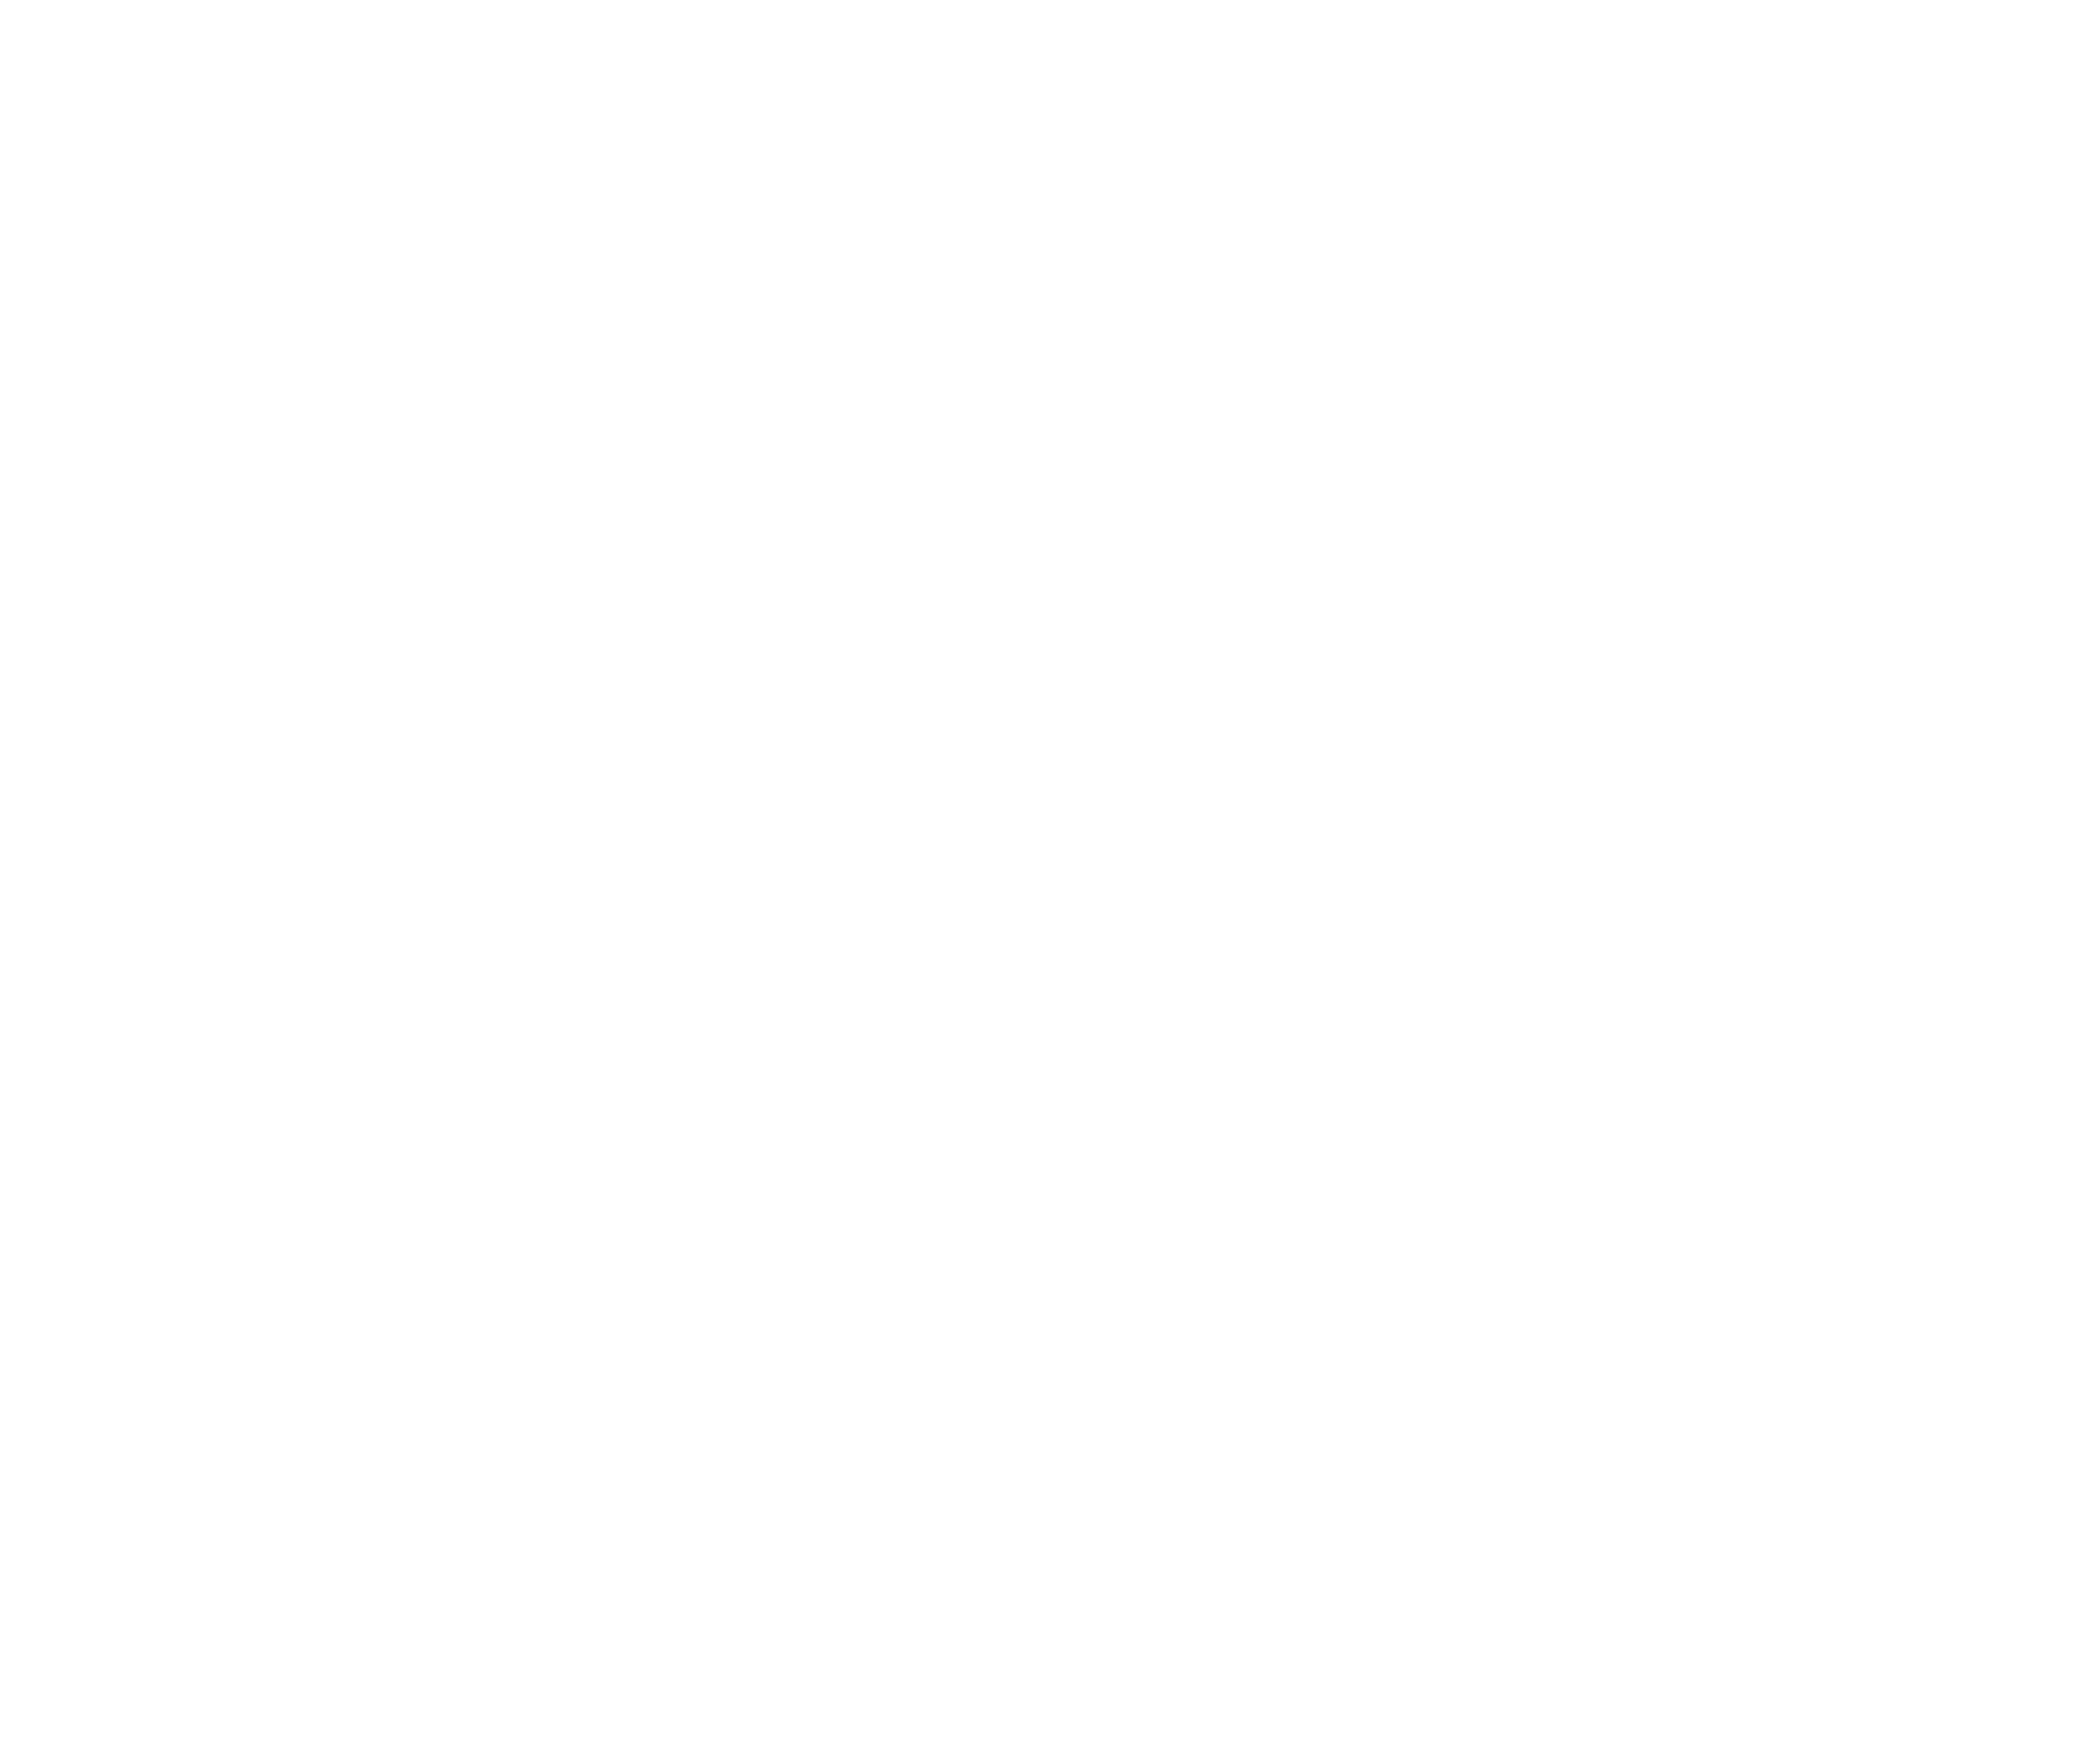 Tiroler Familienskiregionen